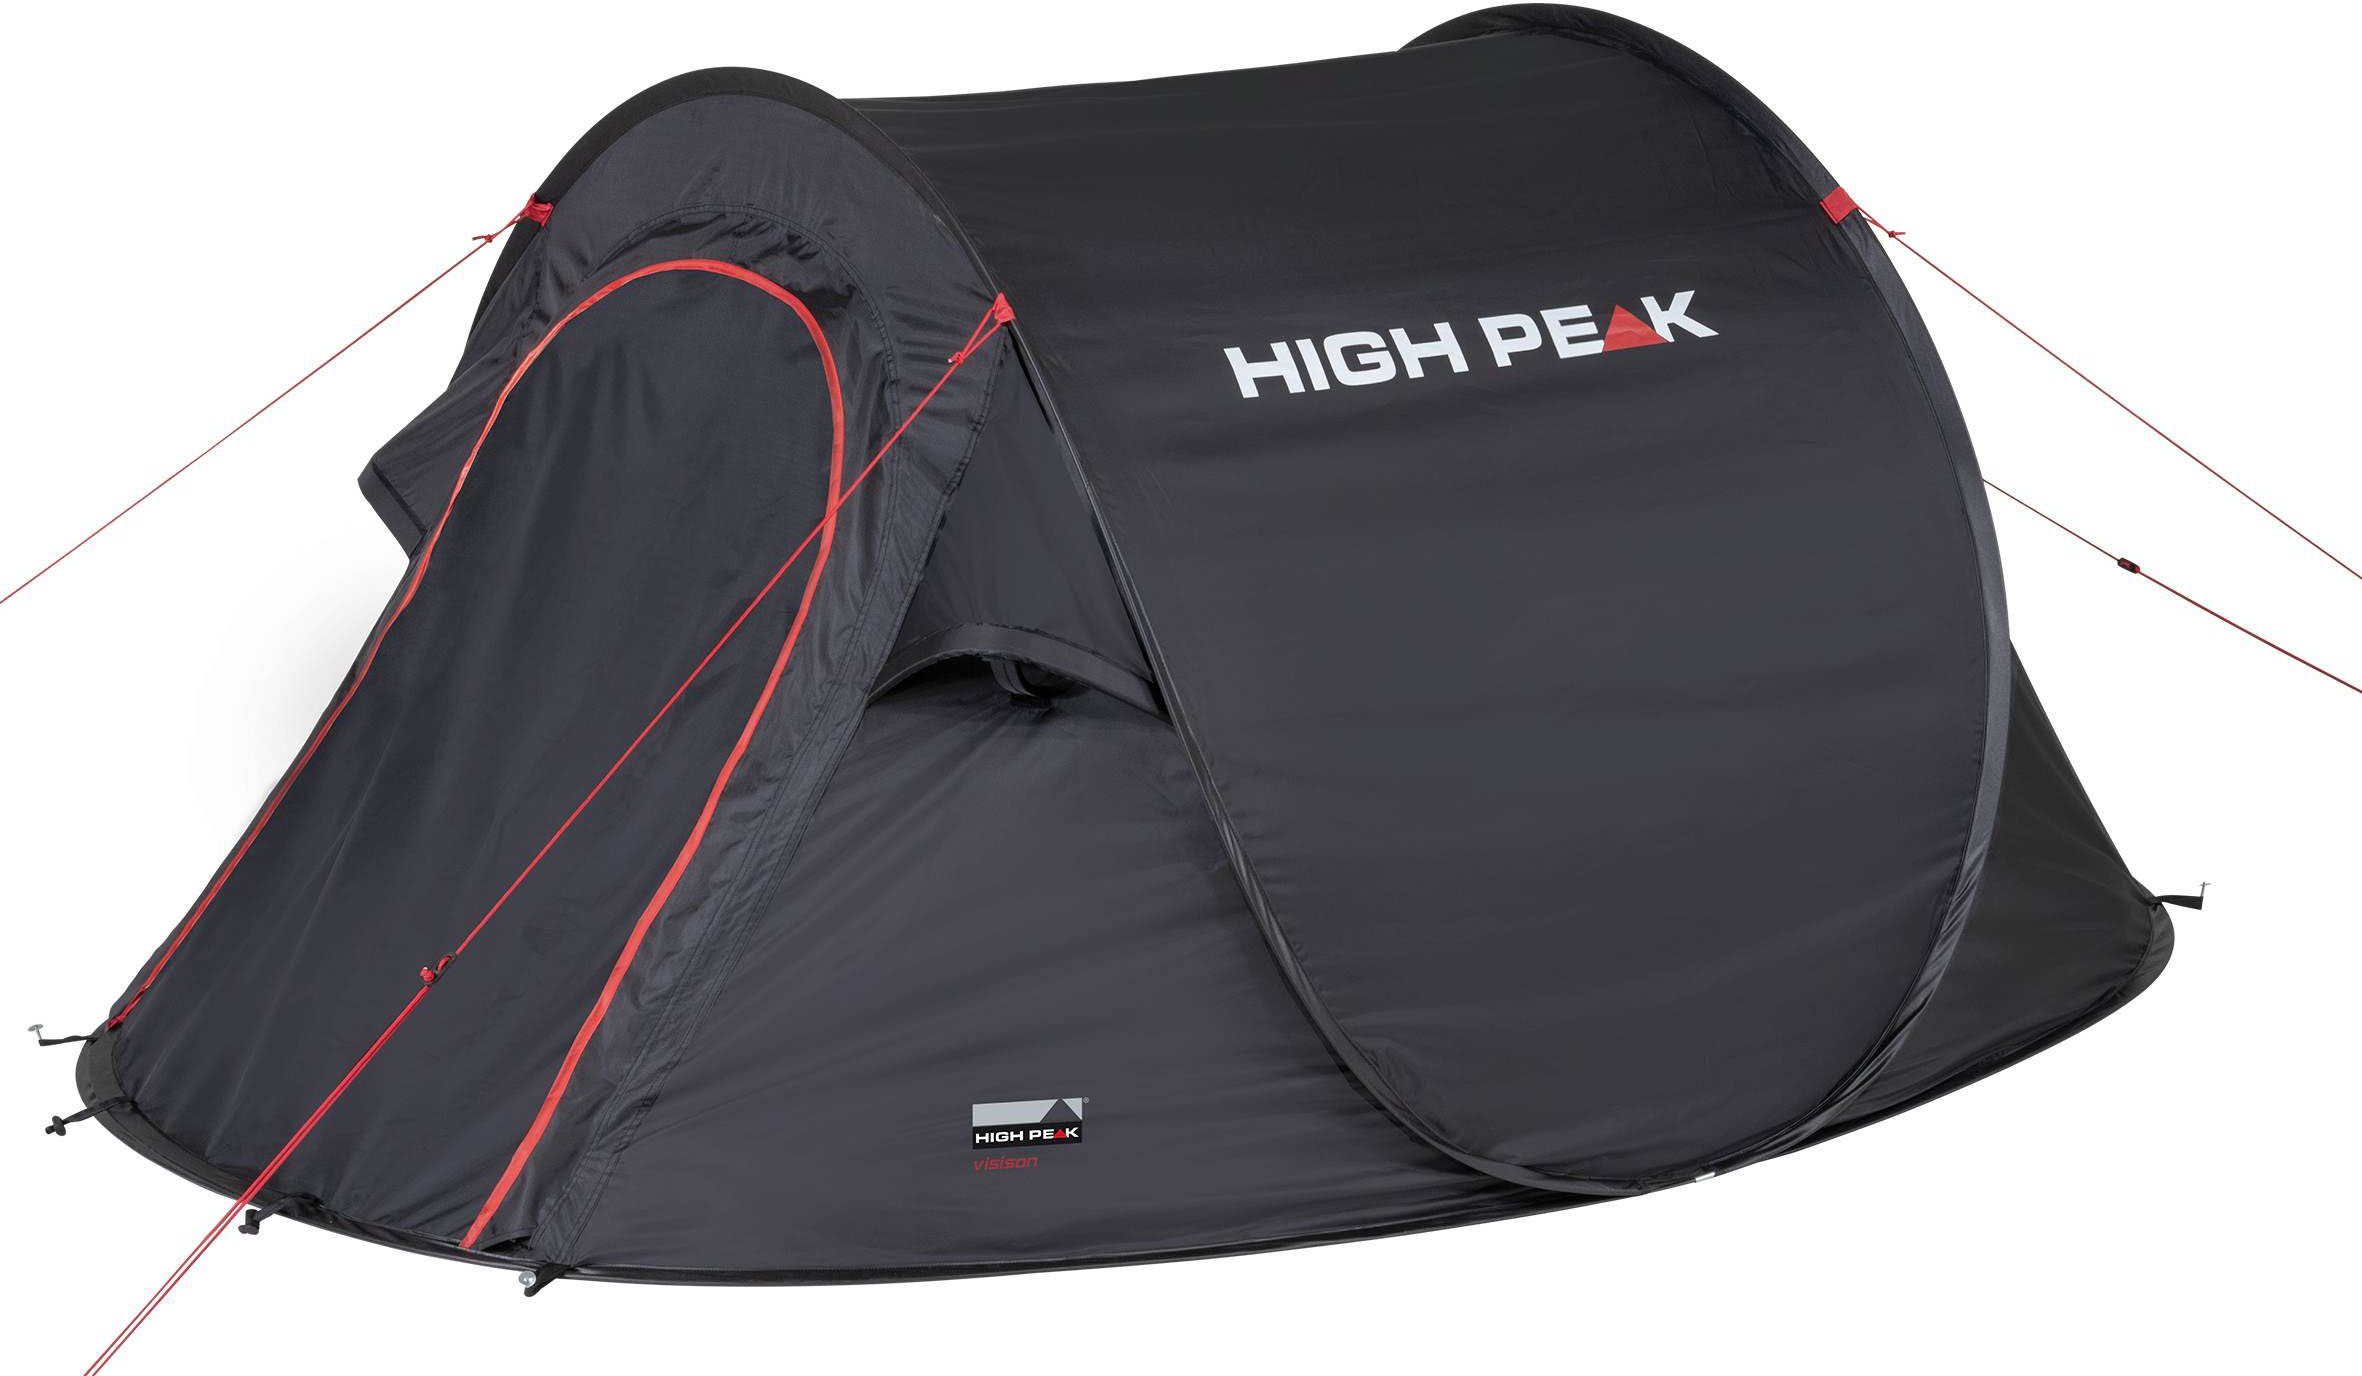 High Peak Wurfzelt Pop up Zelt Vision 2, Personen: 2 (mit Transporttasche),  in Sekunden aufgestellt, Gewicht nur ca. 1.860 Gramm